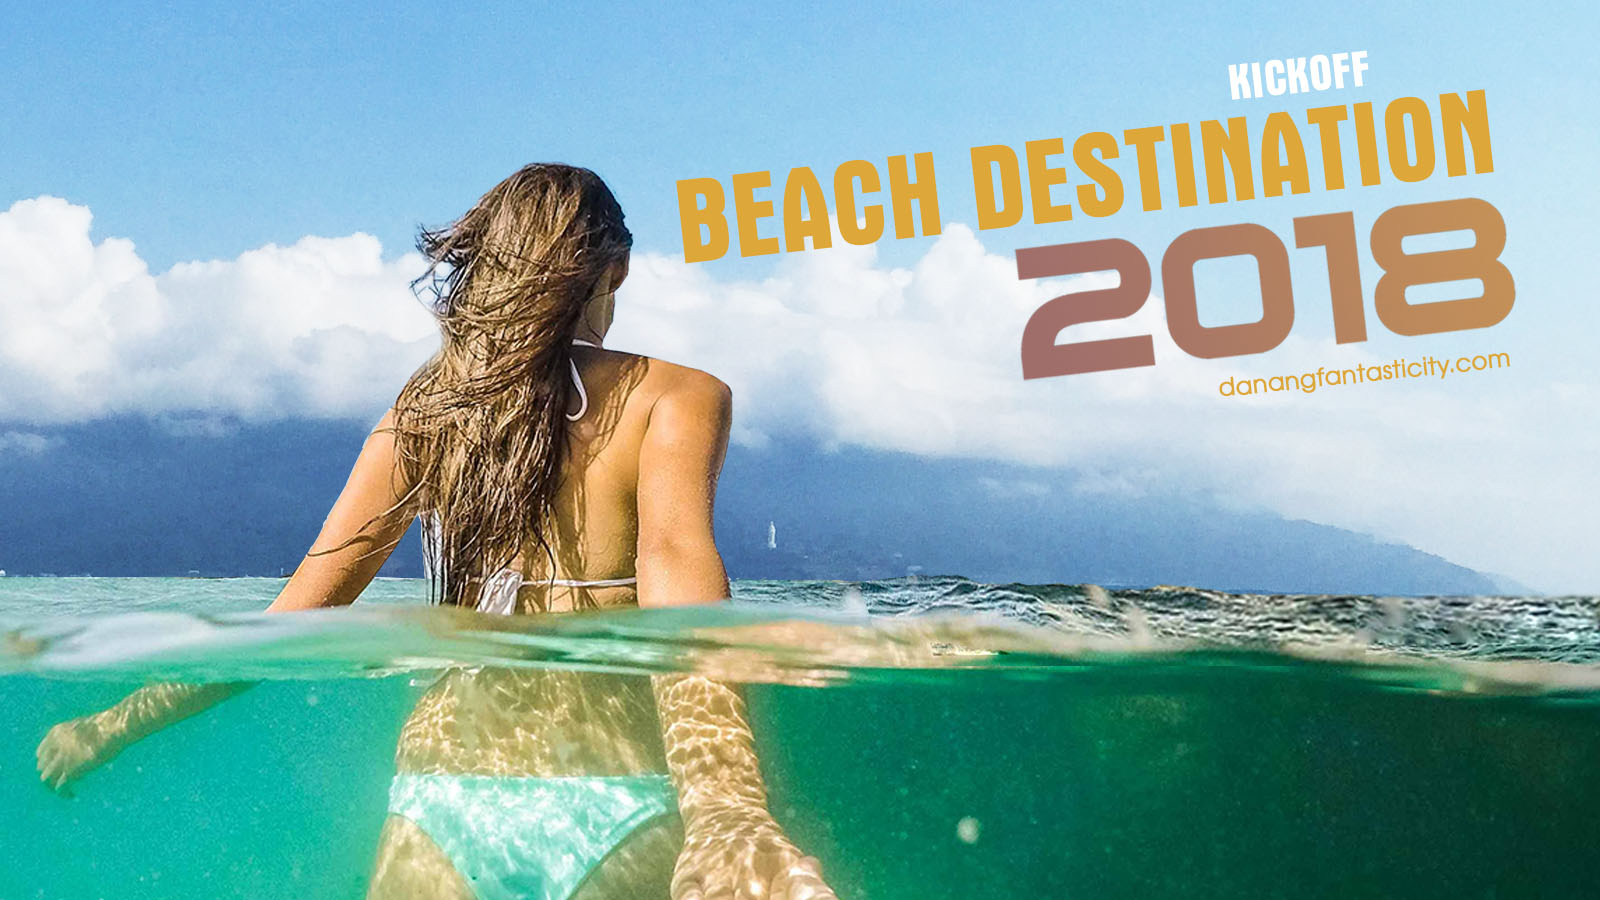 Beach Tourism season kick-off Danang 2018